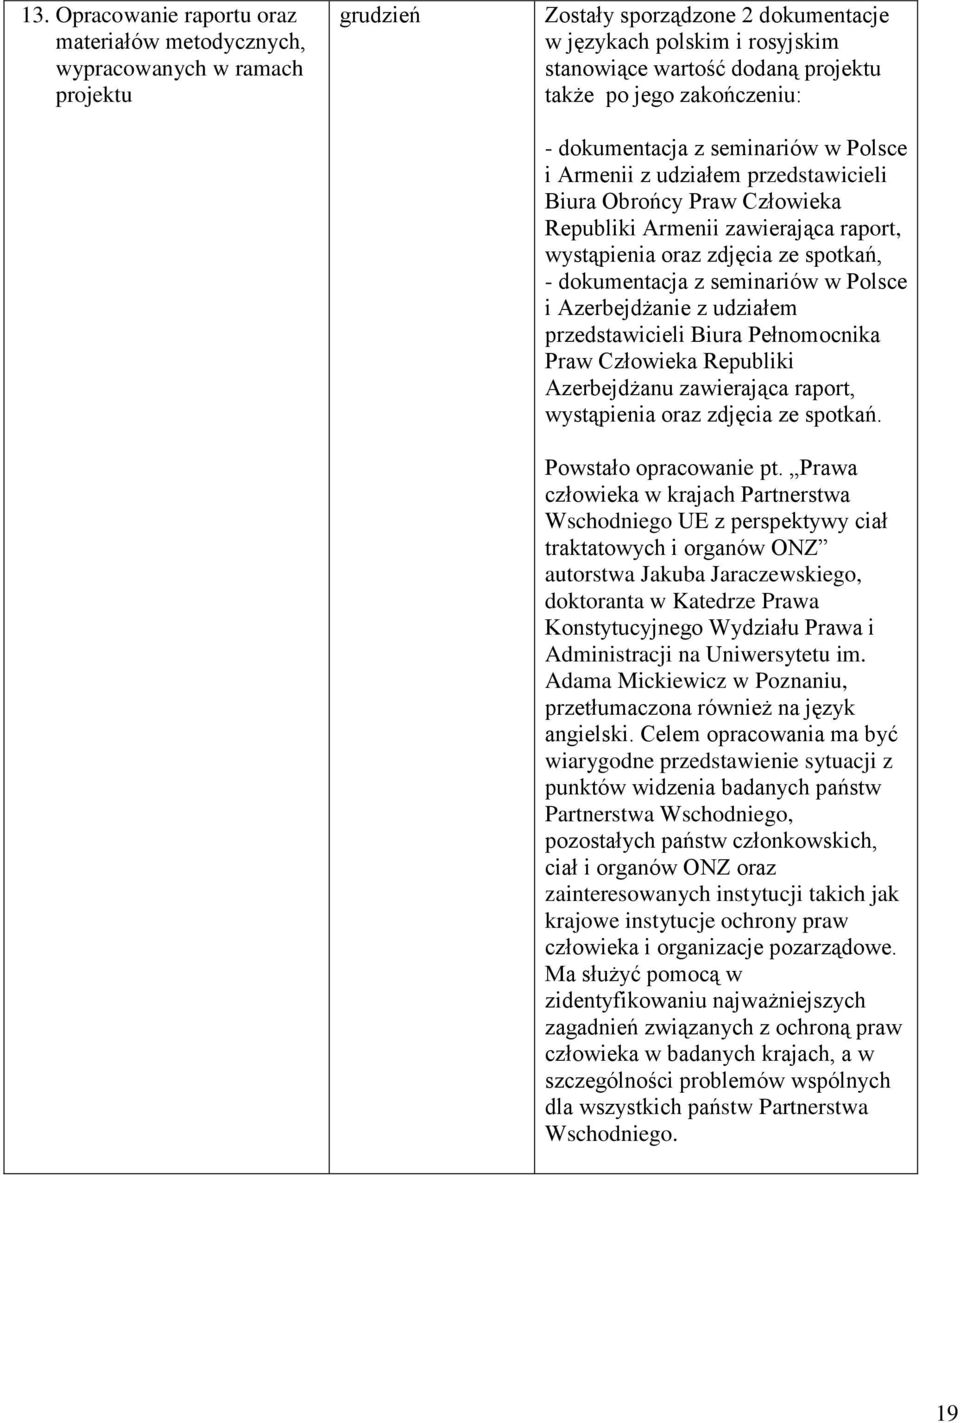 spotkań, - dokumentacja z seminariów w Polsce i Azerbejdżanie z udziałem przedstawicieli Biura Pełnomocnika Praw Człowieka Republiki Azerbejdżanu zawierająca raport, wystąpienia oraz zdjęcia ze